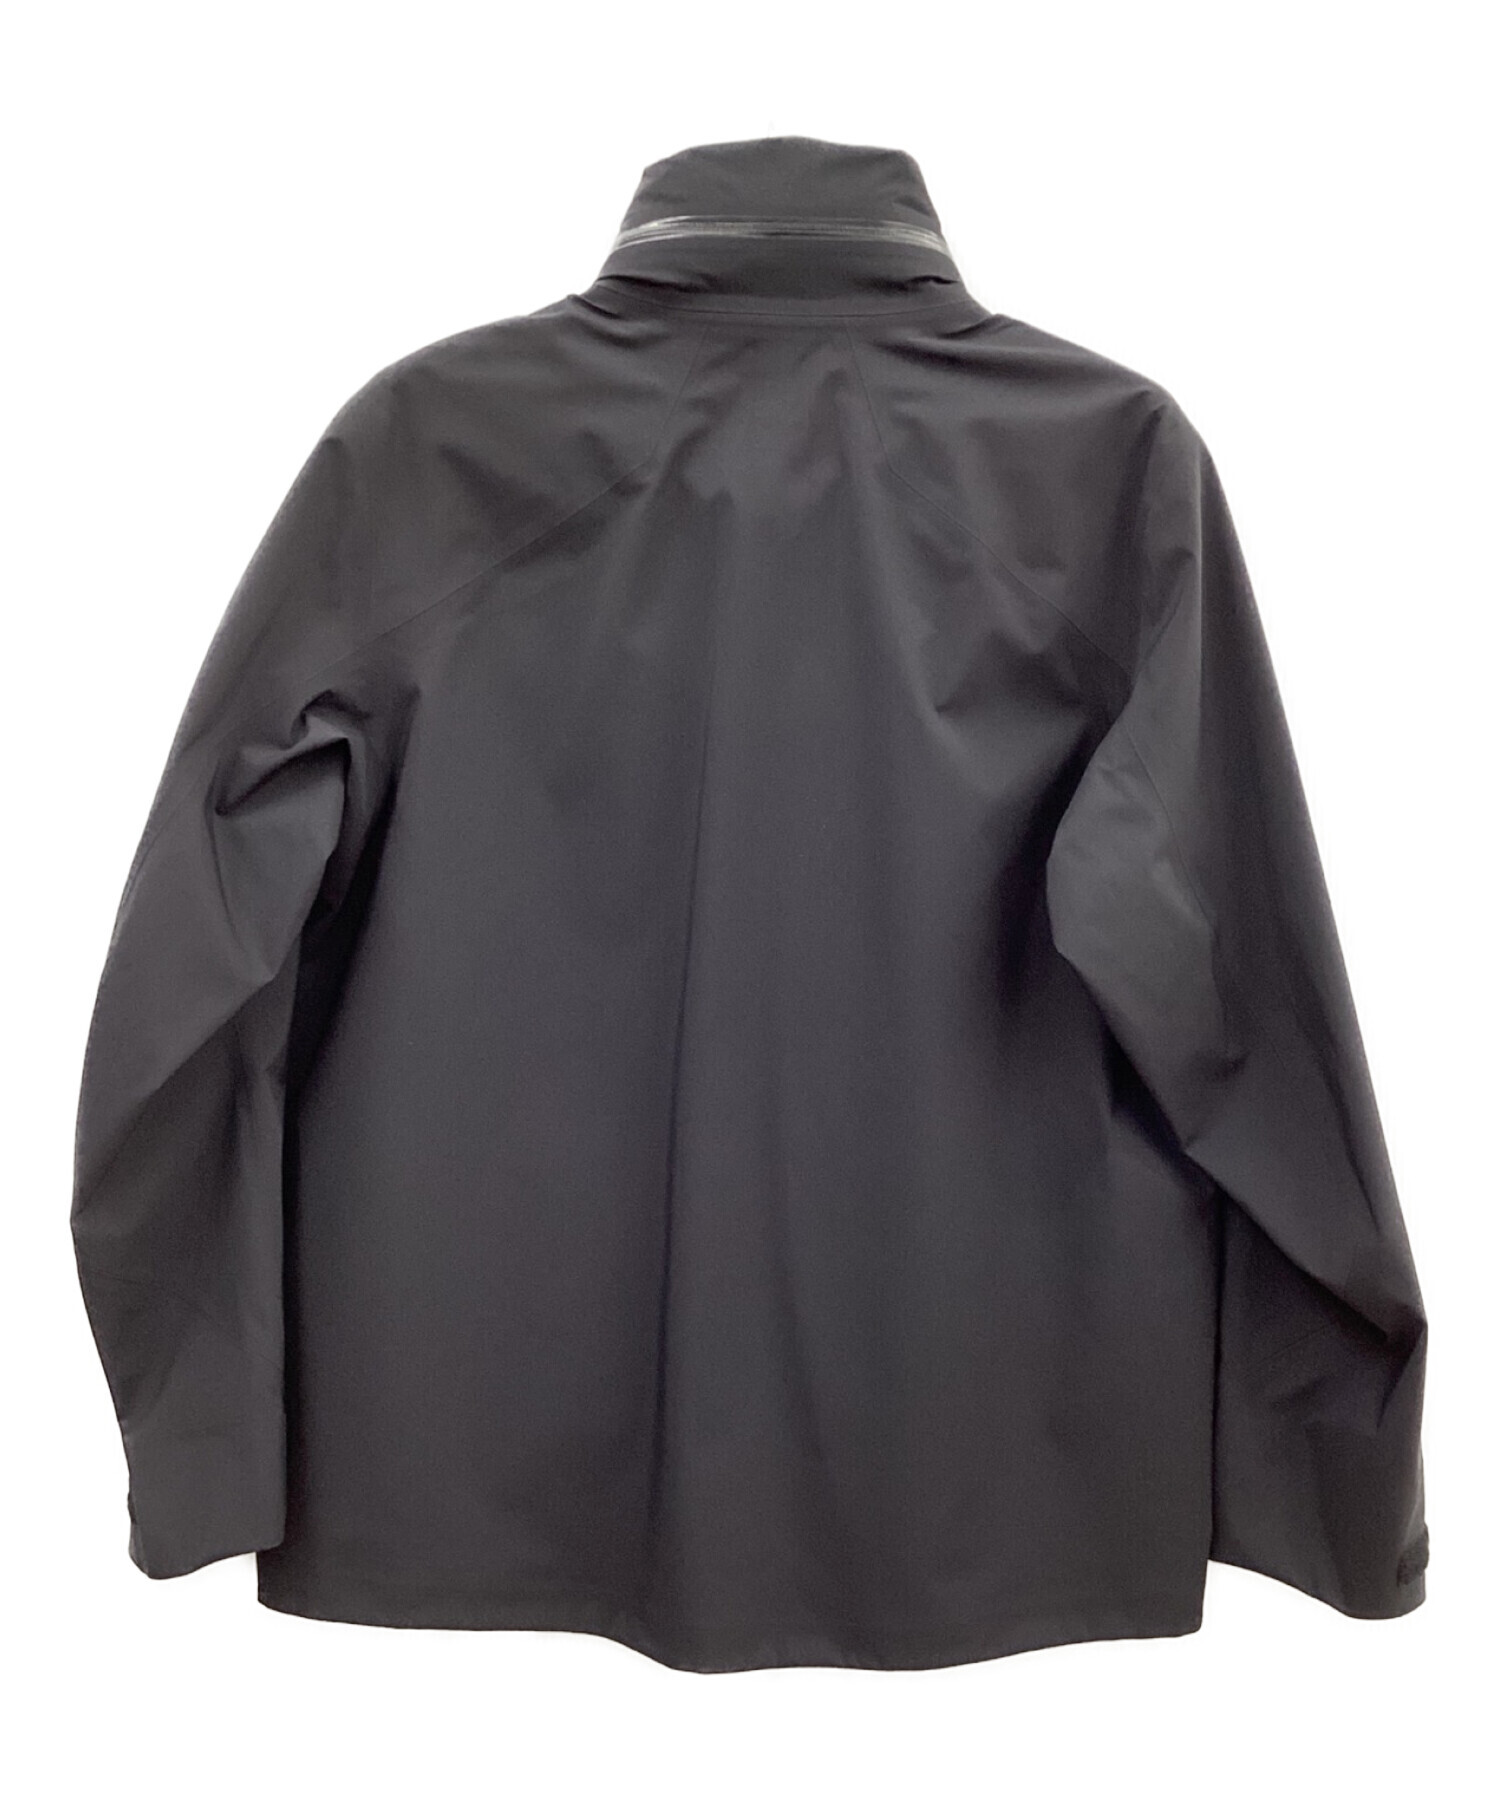 ARC'TERYX VEILANCE (アークテリクス ヴェイランス) フィールドジャケット ブラック サイズ:S